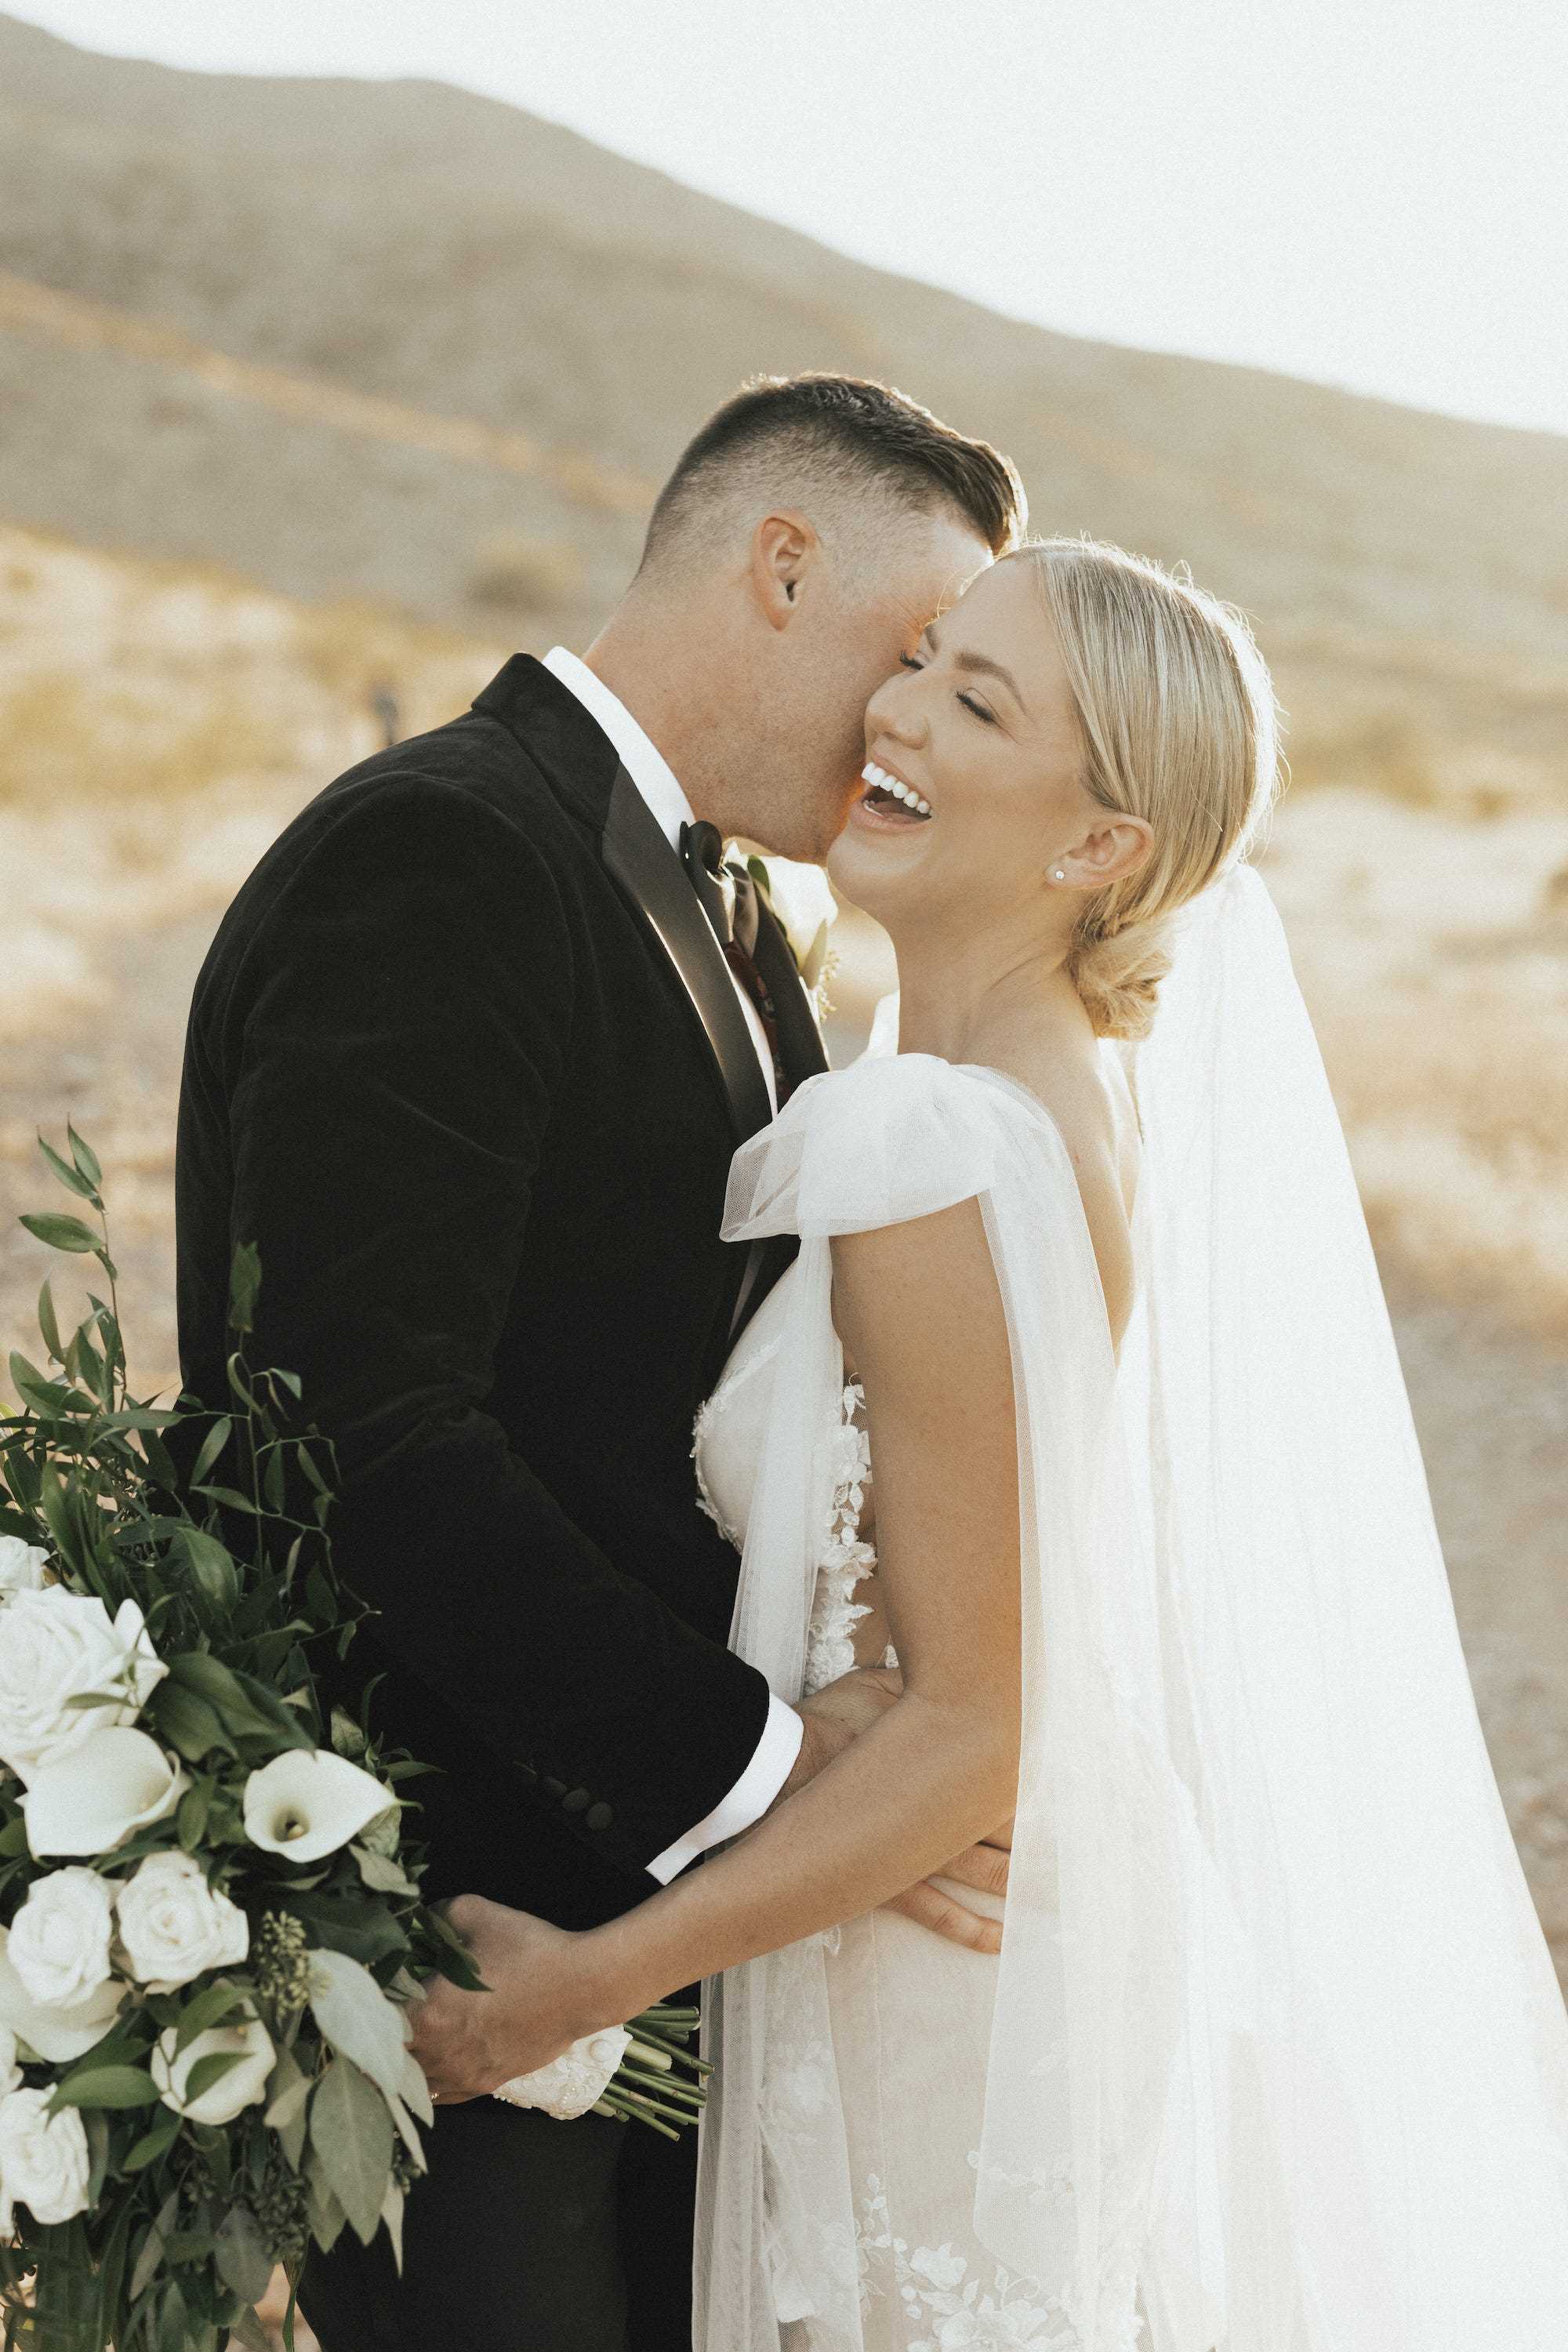 Eine Braut lacht und hält einen Blumenstrauß, während ihr Bräutigam sie auf die Wange küsst.